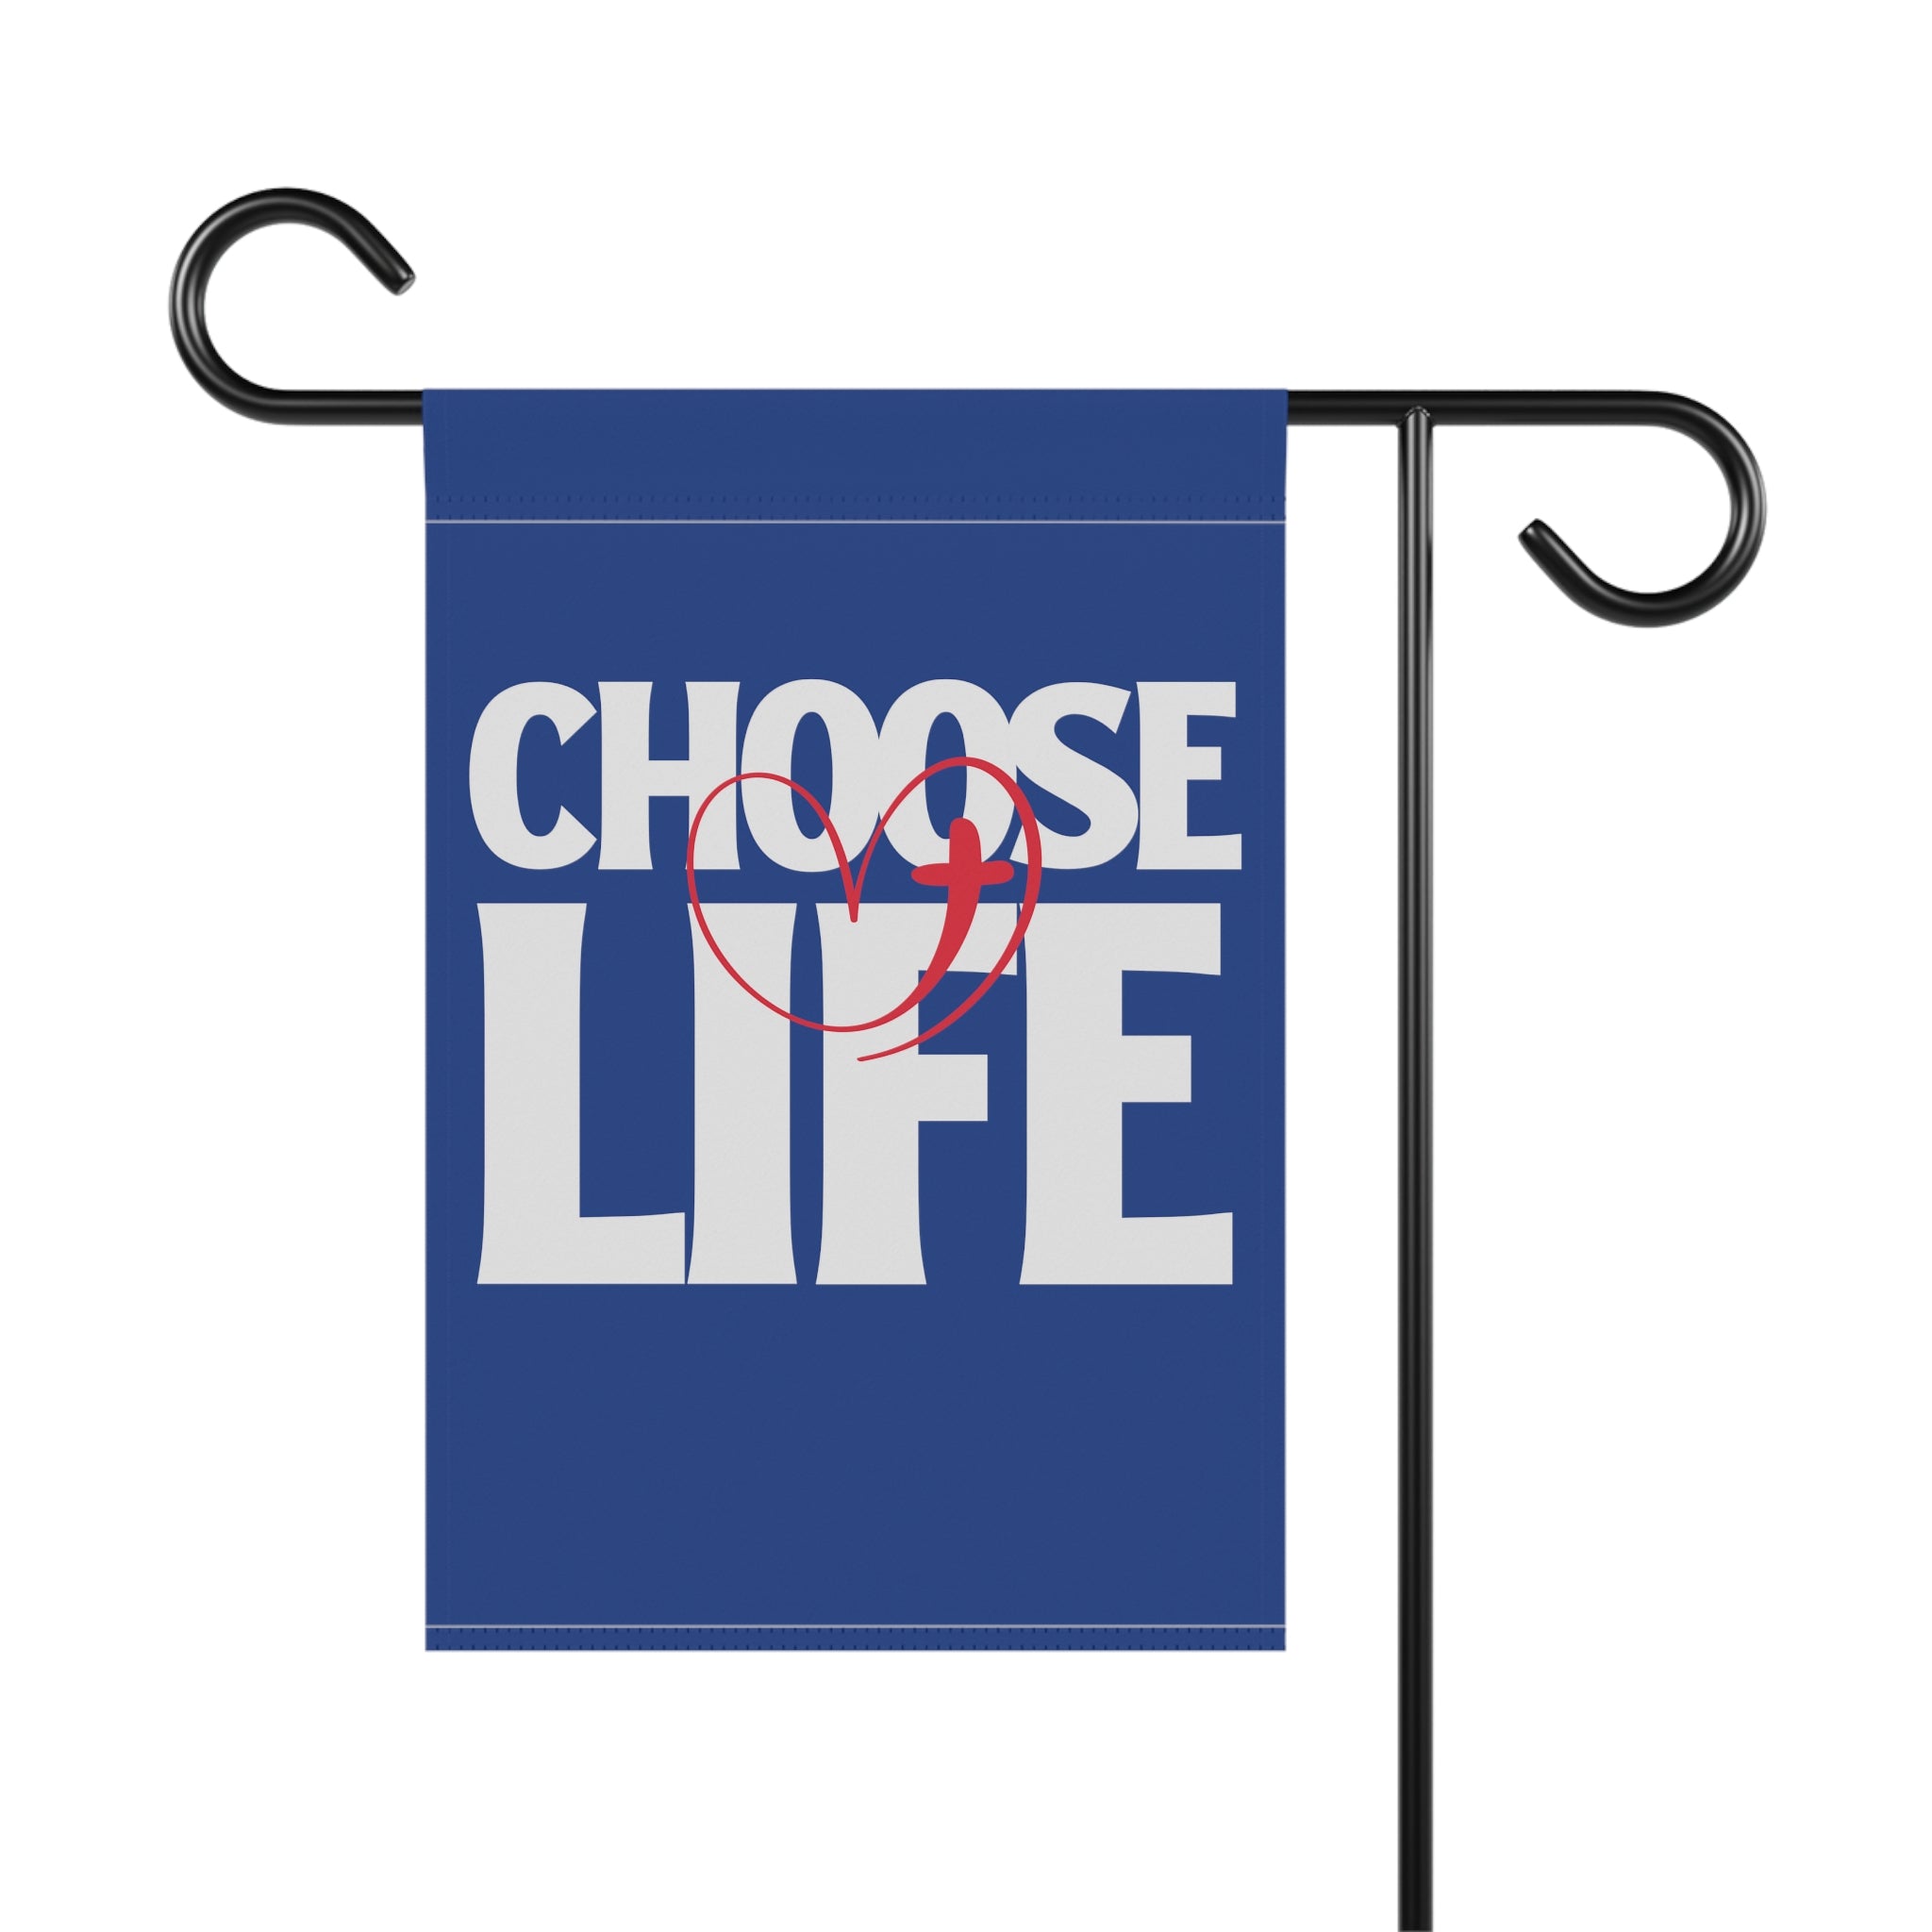 Choose life garden flag